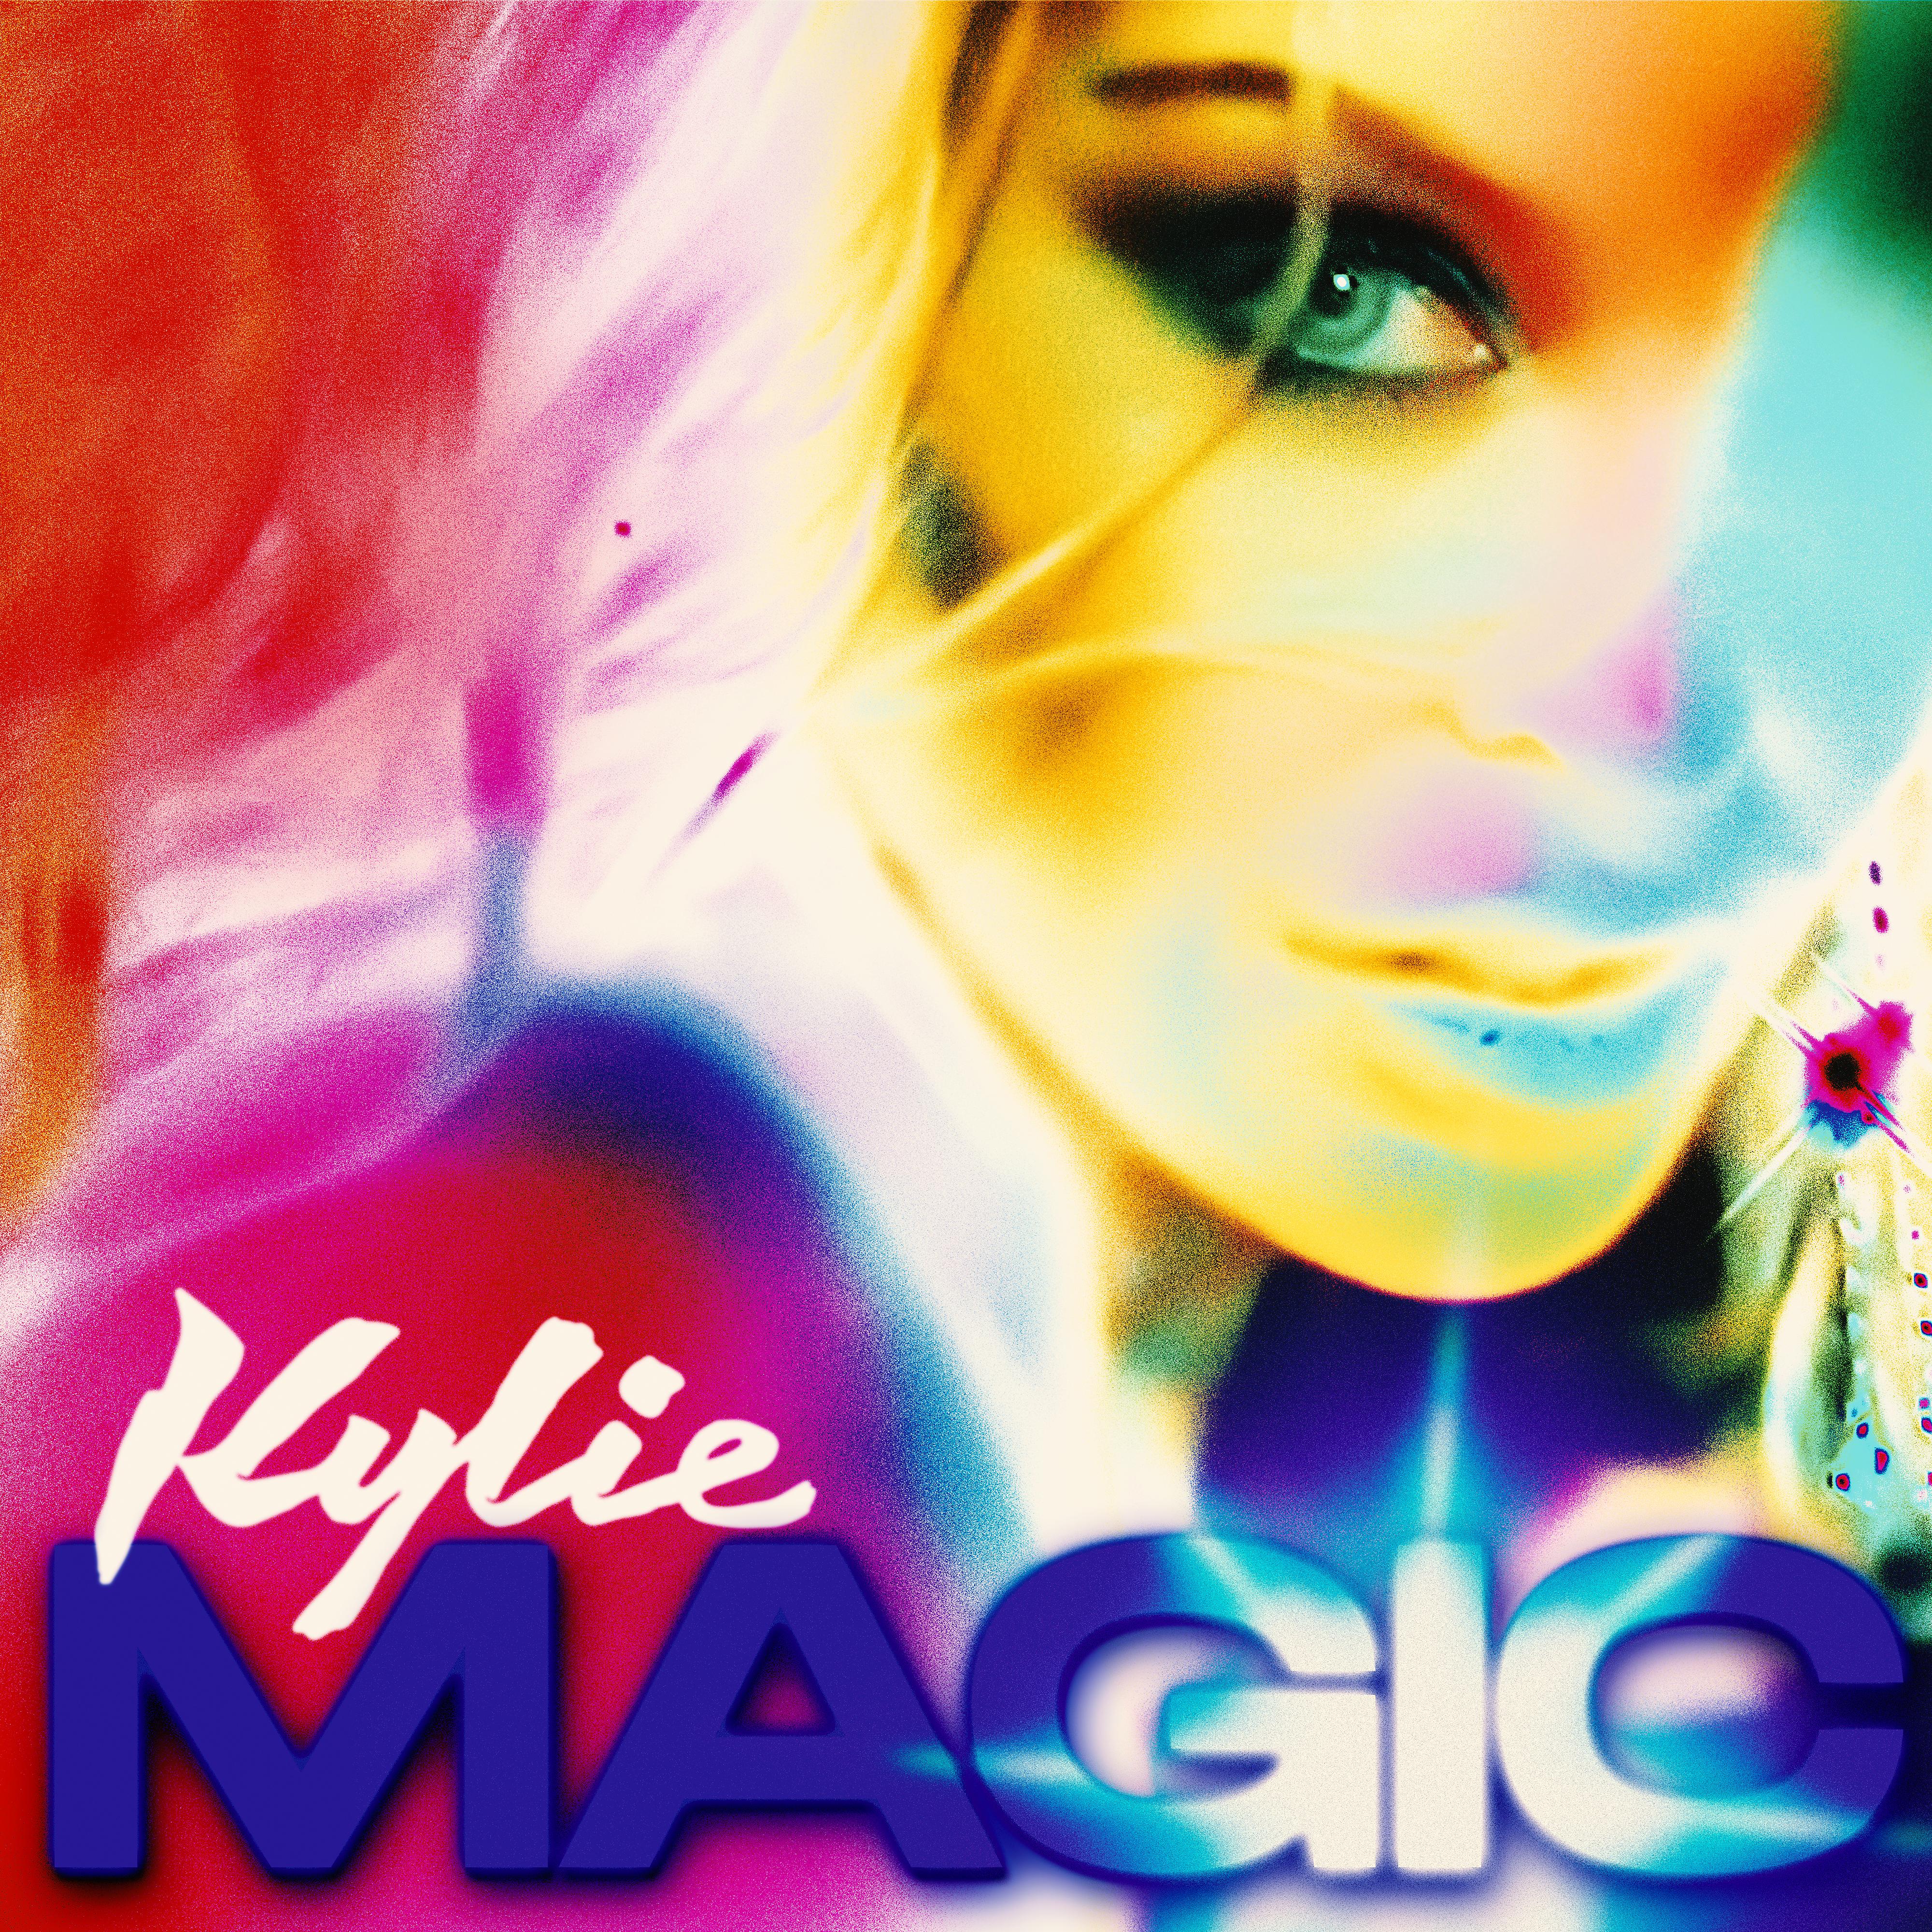 Minogue kylie disco